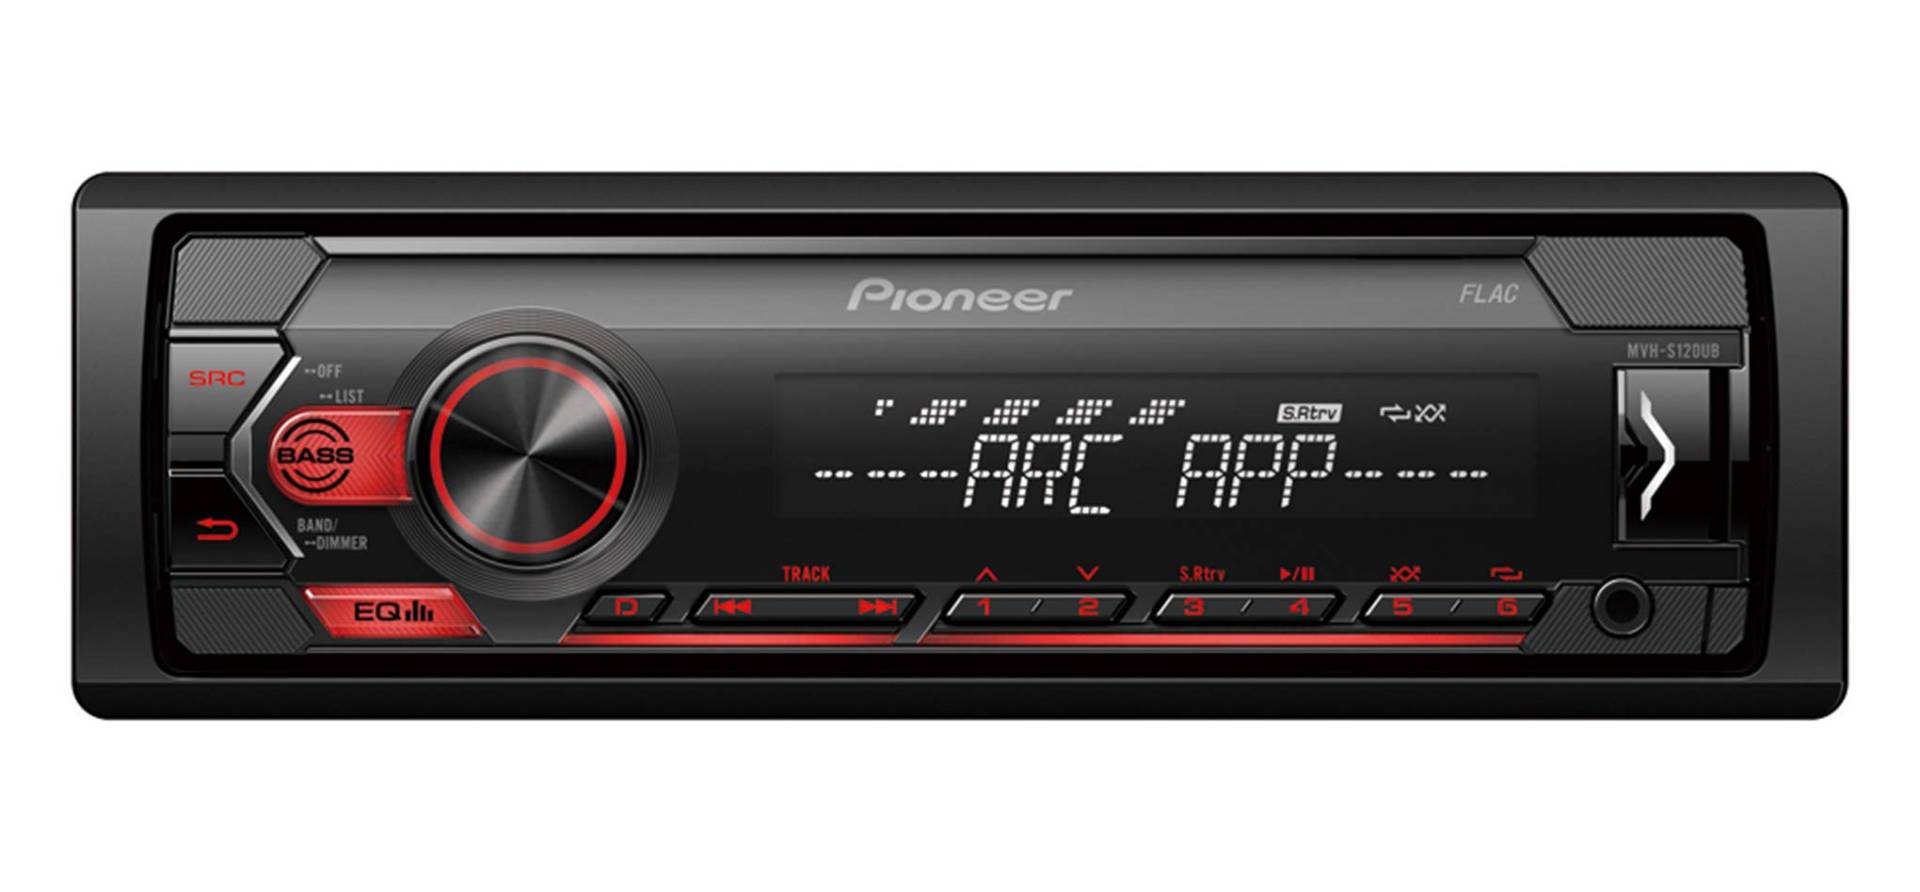 Pioneer MVH-S120UB | 1DIN Autoradio mit RDS | rot | halbe Einbautiefe | 4x50Watt | USB | MP3 | AUX-Eingang | Android-Unterstützung | 5-Band Equalizer | ARC App von Pioneer